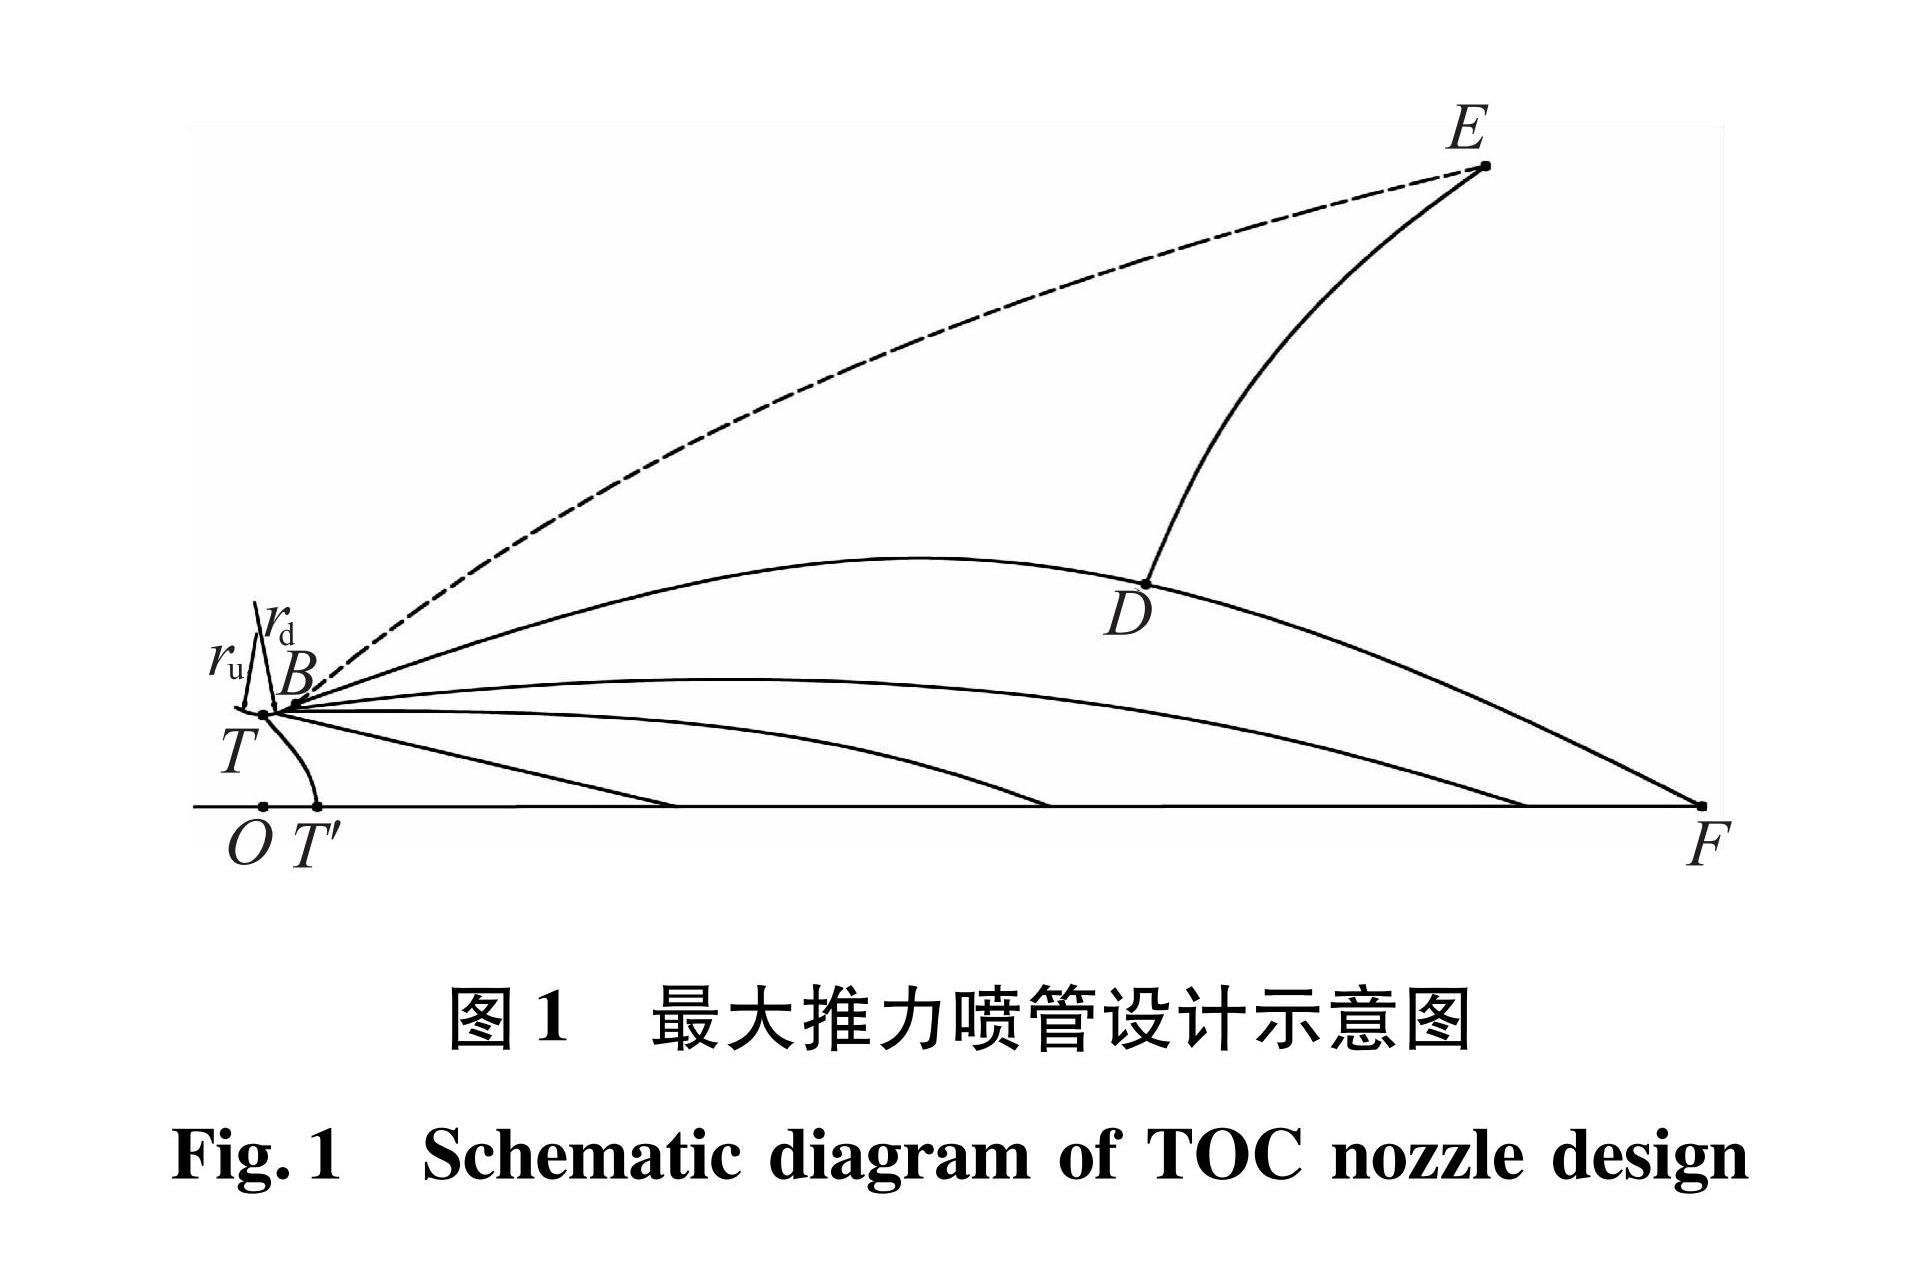 图1 最大推力喷管设计示意图<br/>Fig.1 Schematic diagram of TOC nozzle design